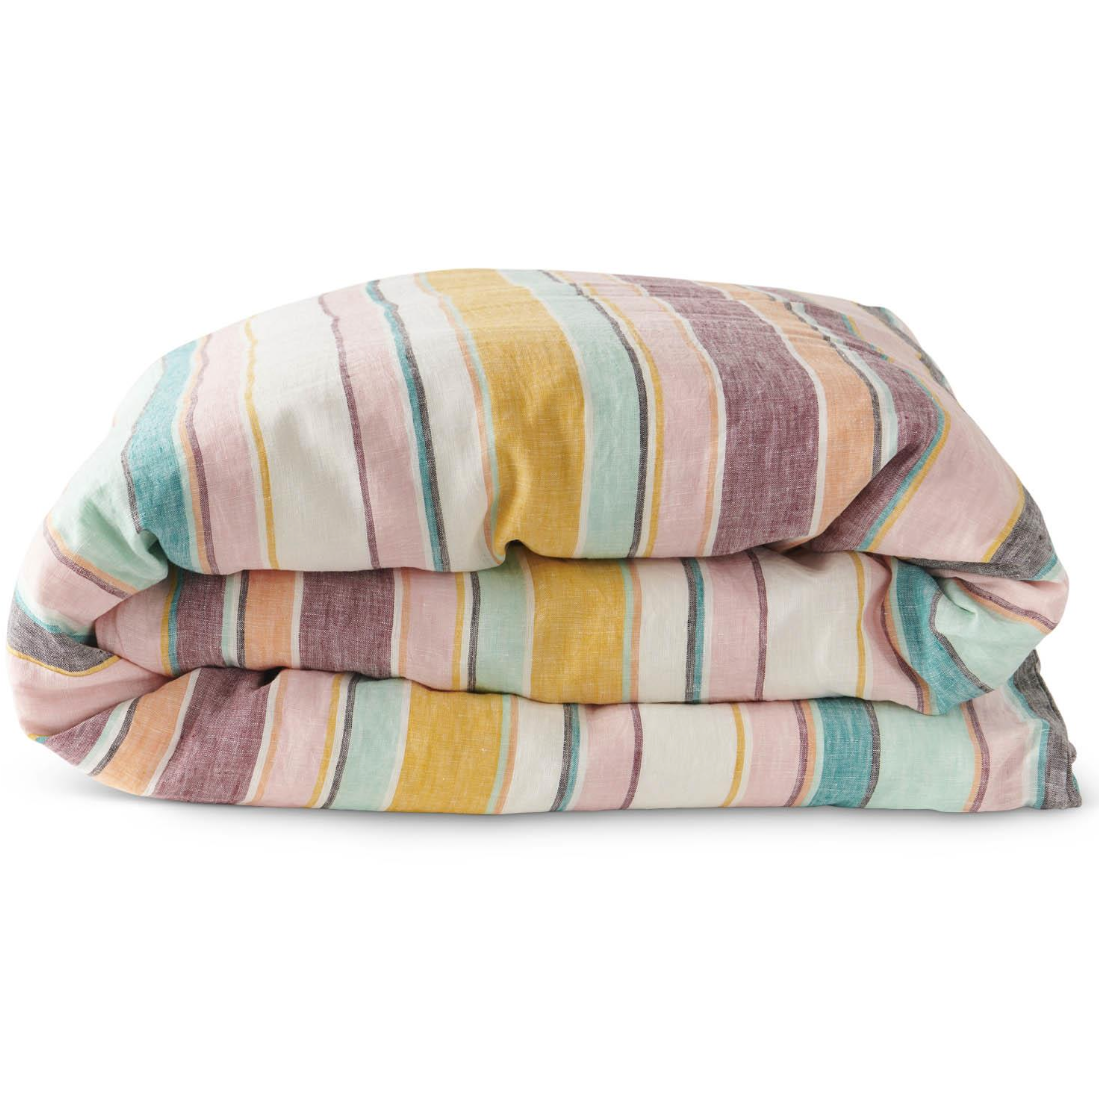 Linen Quilt Cover - Hat Trick Woven Stripe